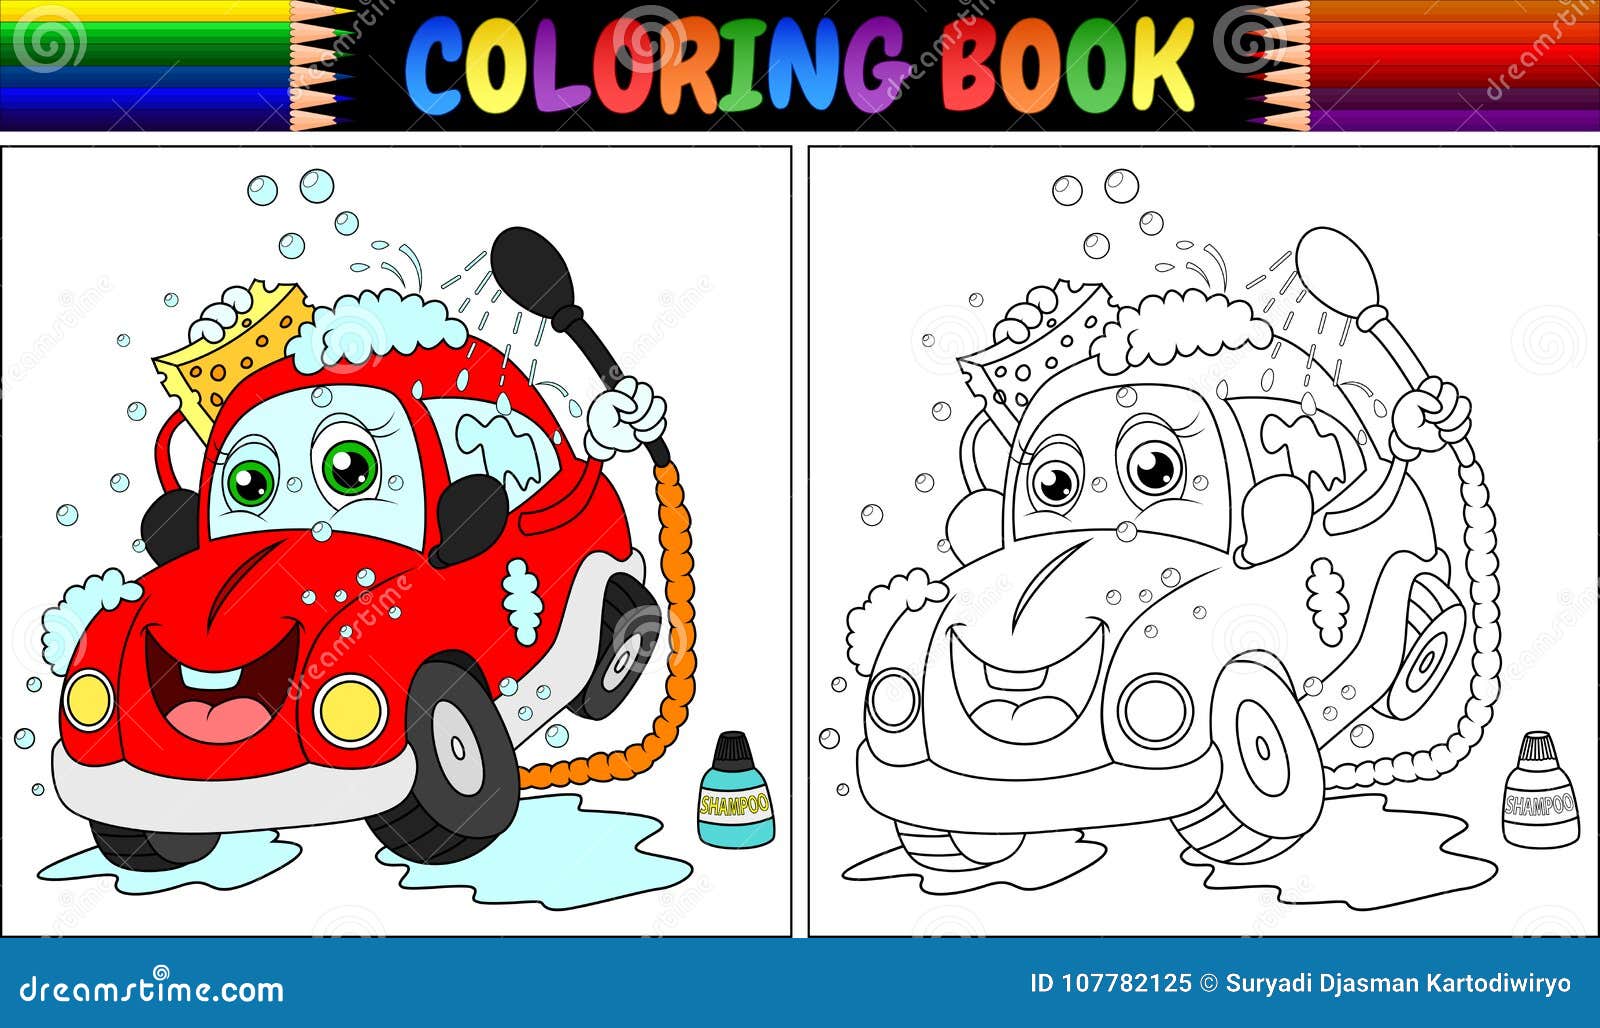 Desenhos bonitos em preto e branco para colorir carros para crianças